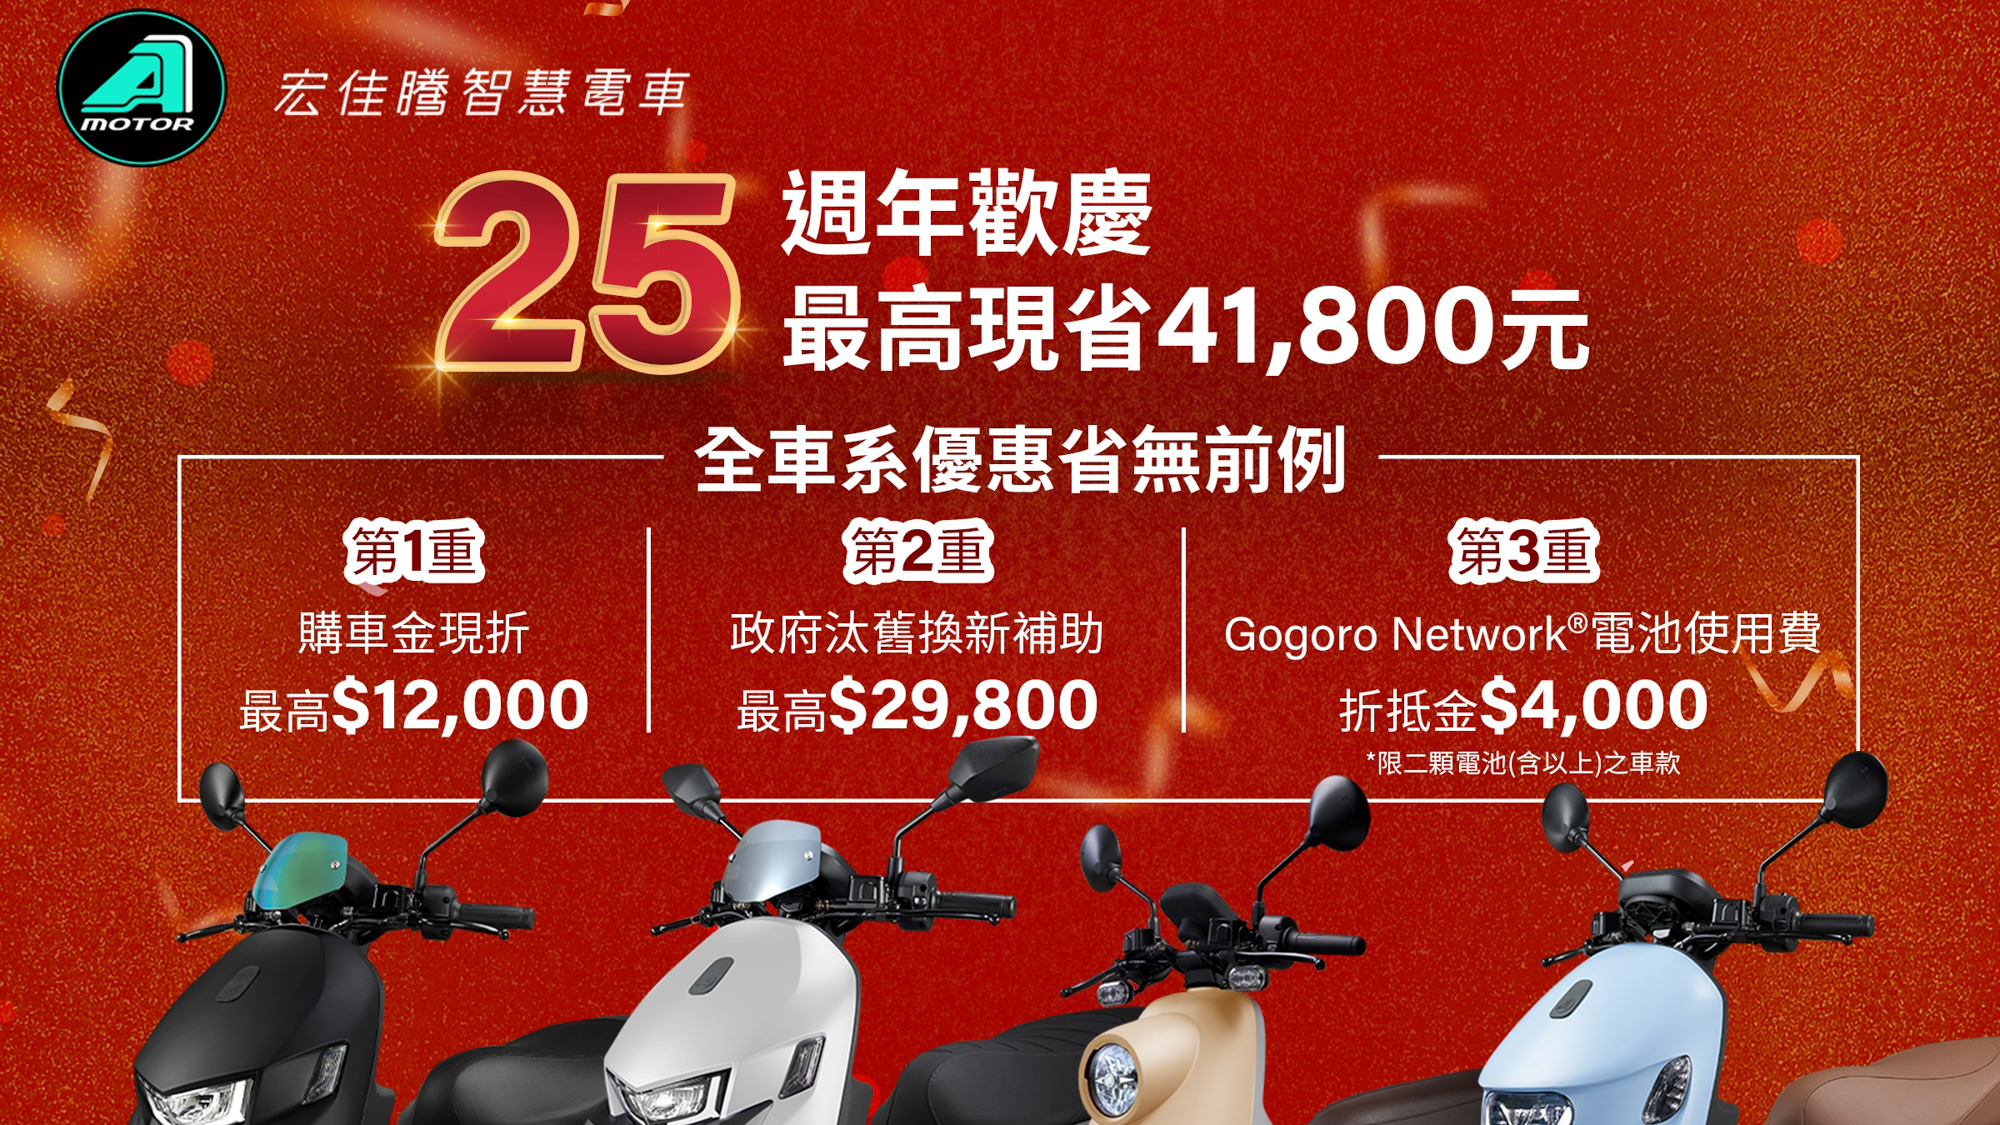 宏佳騰慶 25 週年 購車最高省 41,800 元